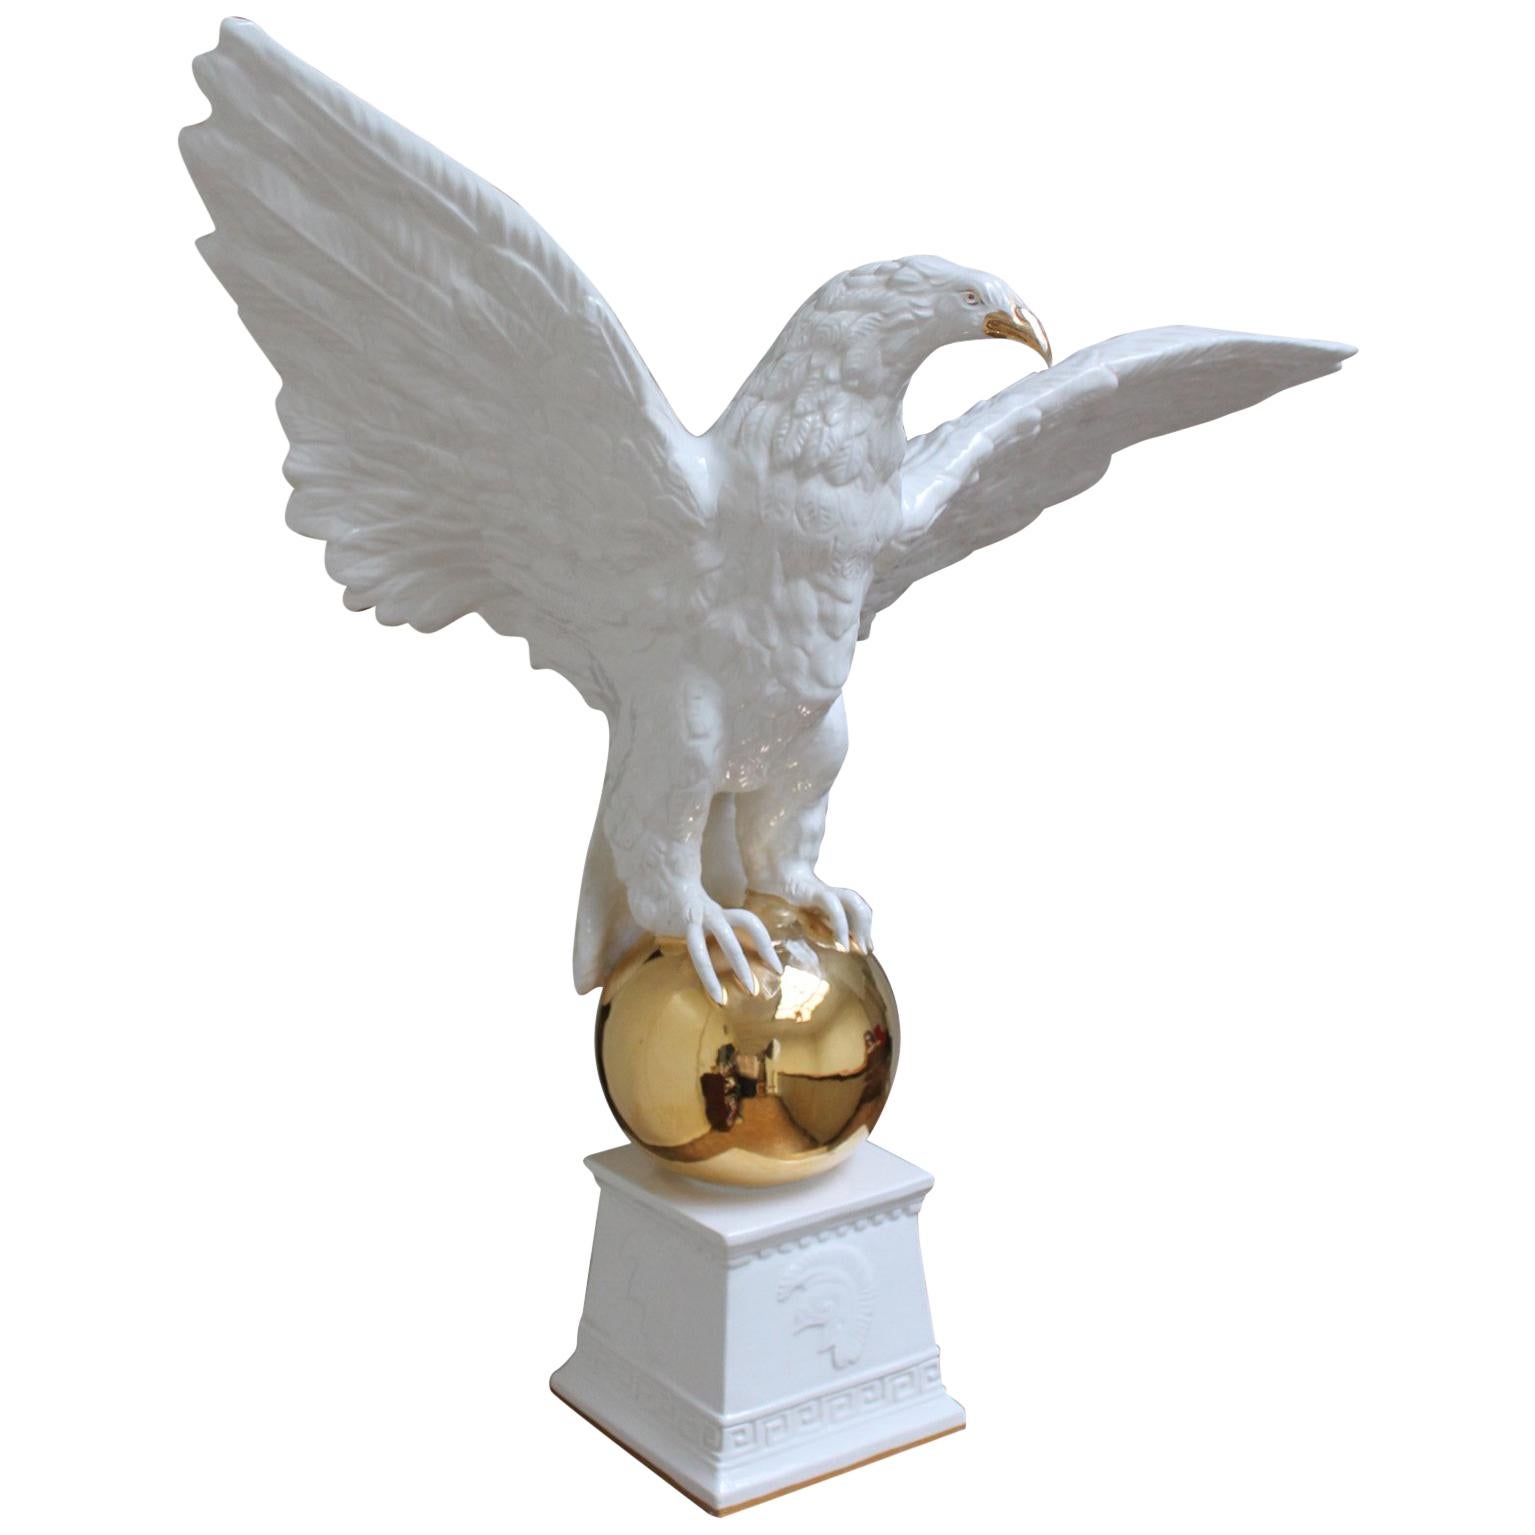 Italian White Ceramic Eagle Statue with Wings Spread, 1970s